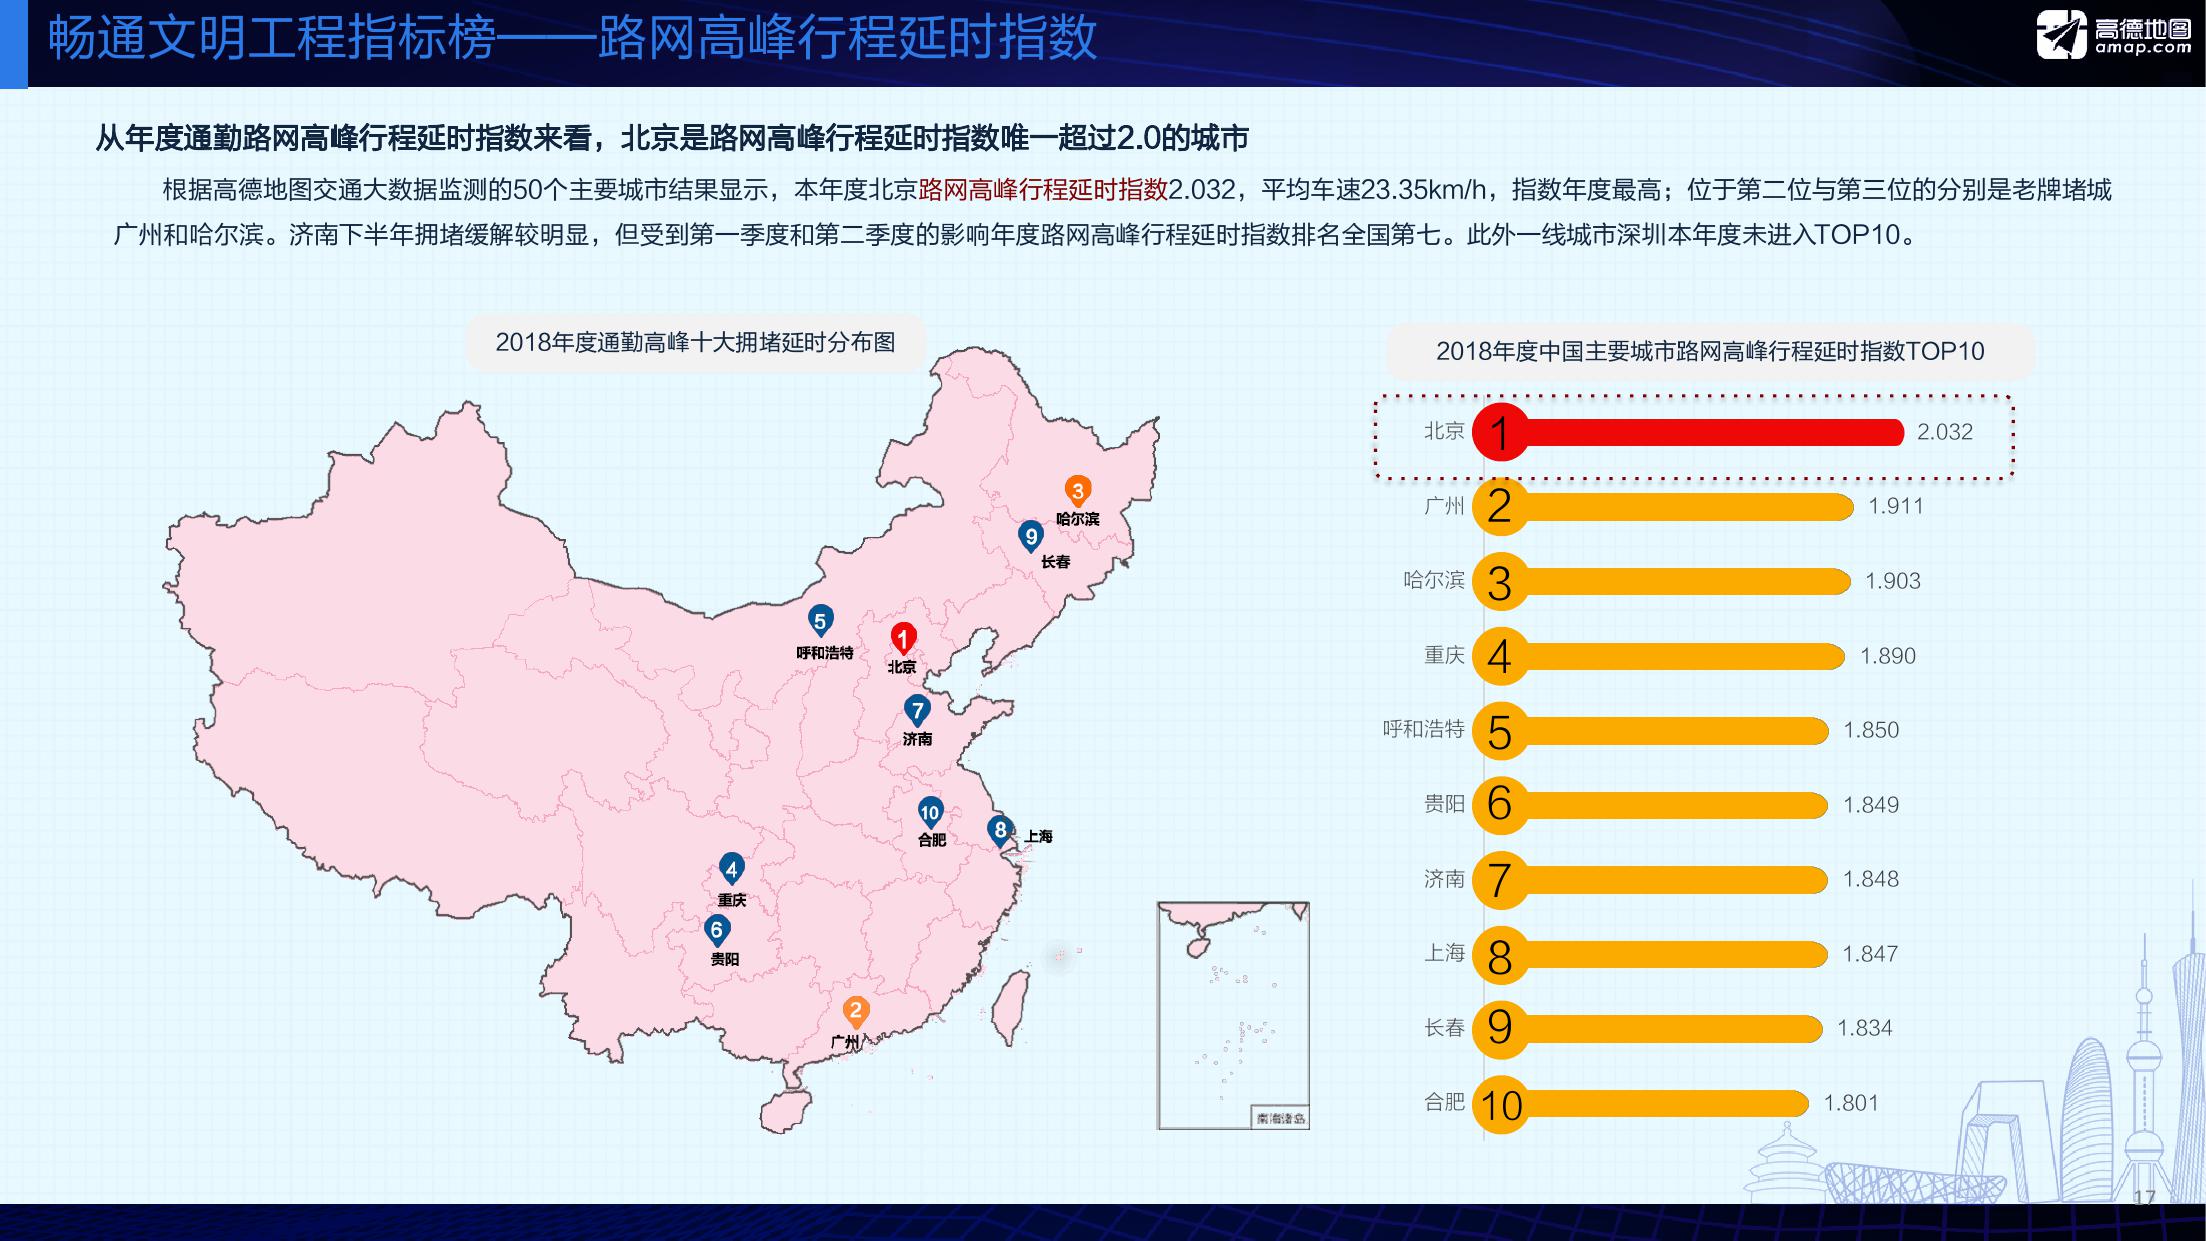 高德地图2018年度中国主要城市交通分析报告